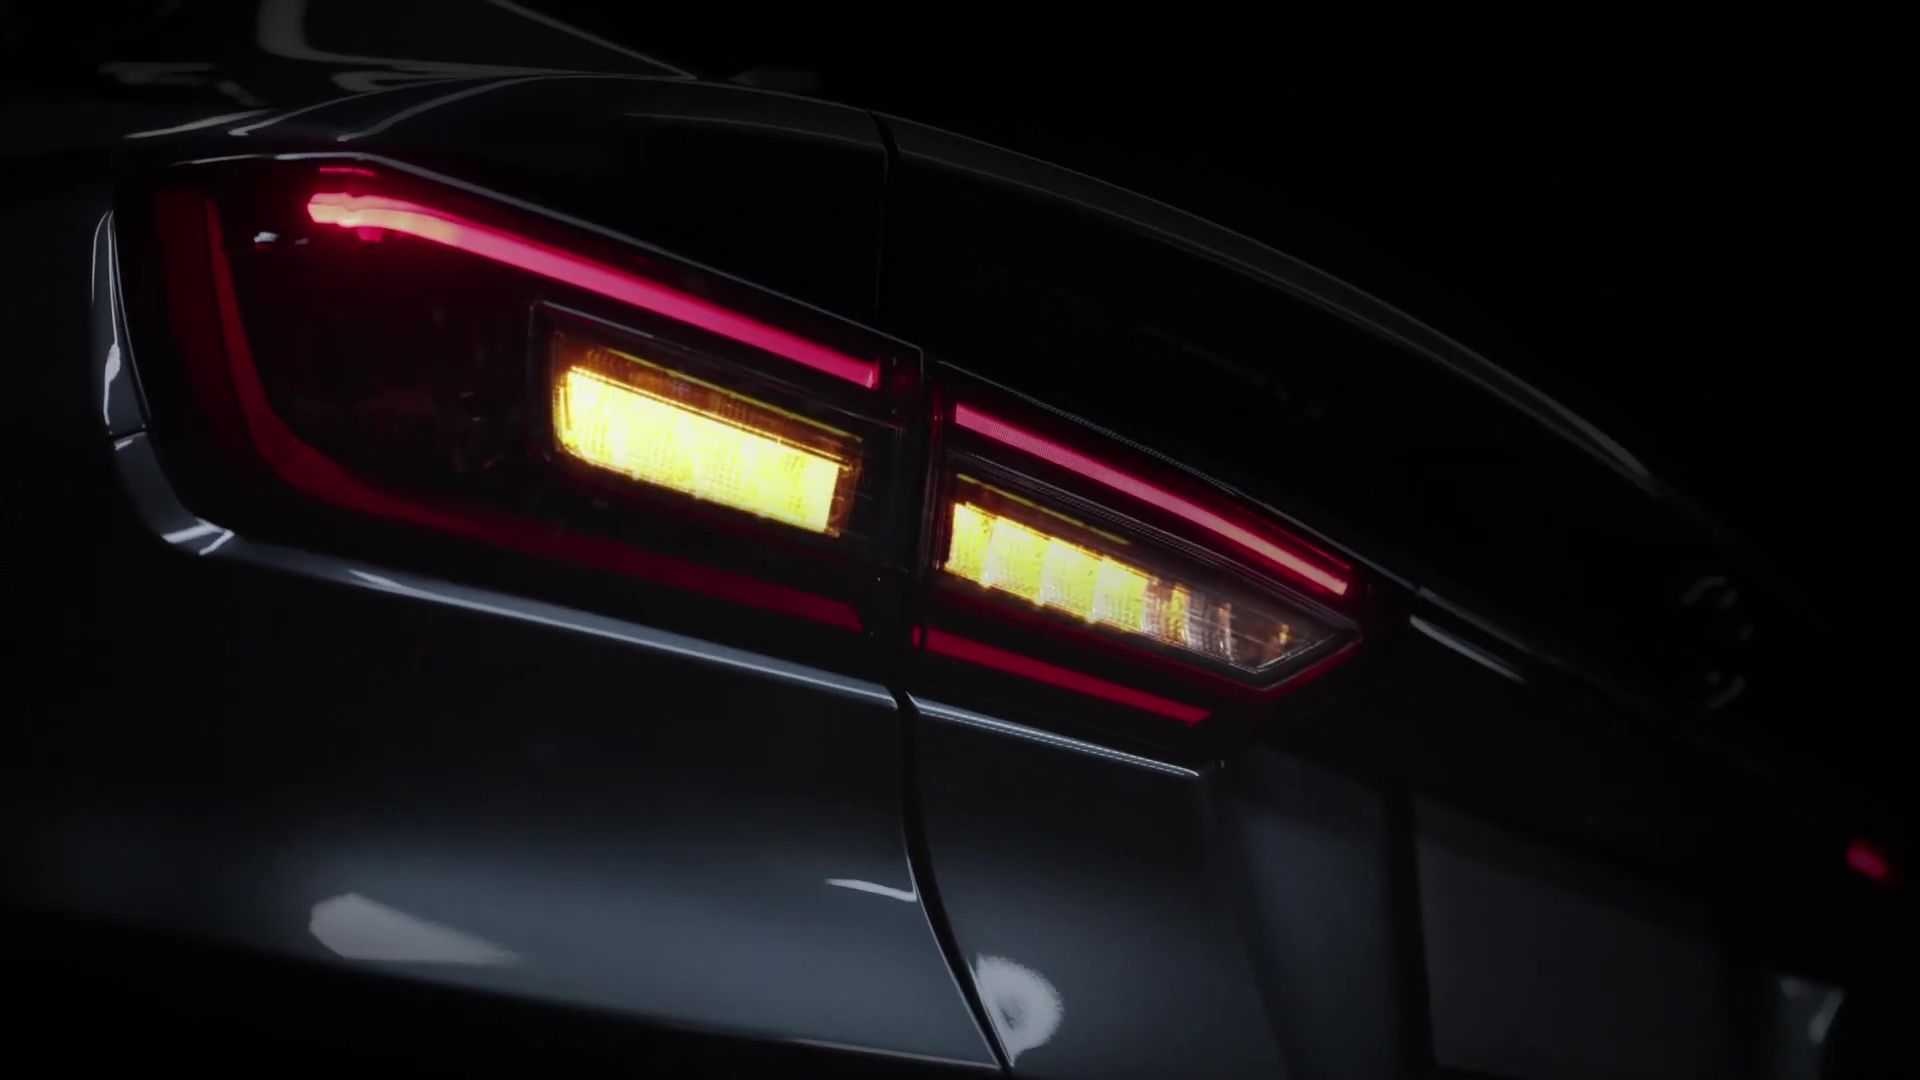 teaser do novo Toyota Yaris mostrando lanterna traseira com LEDs